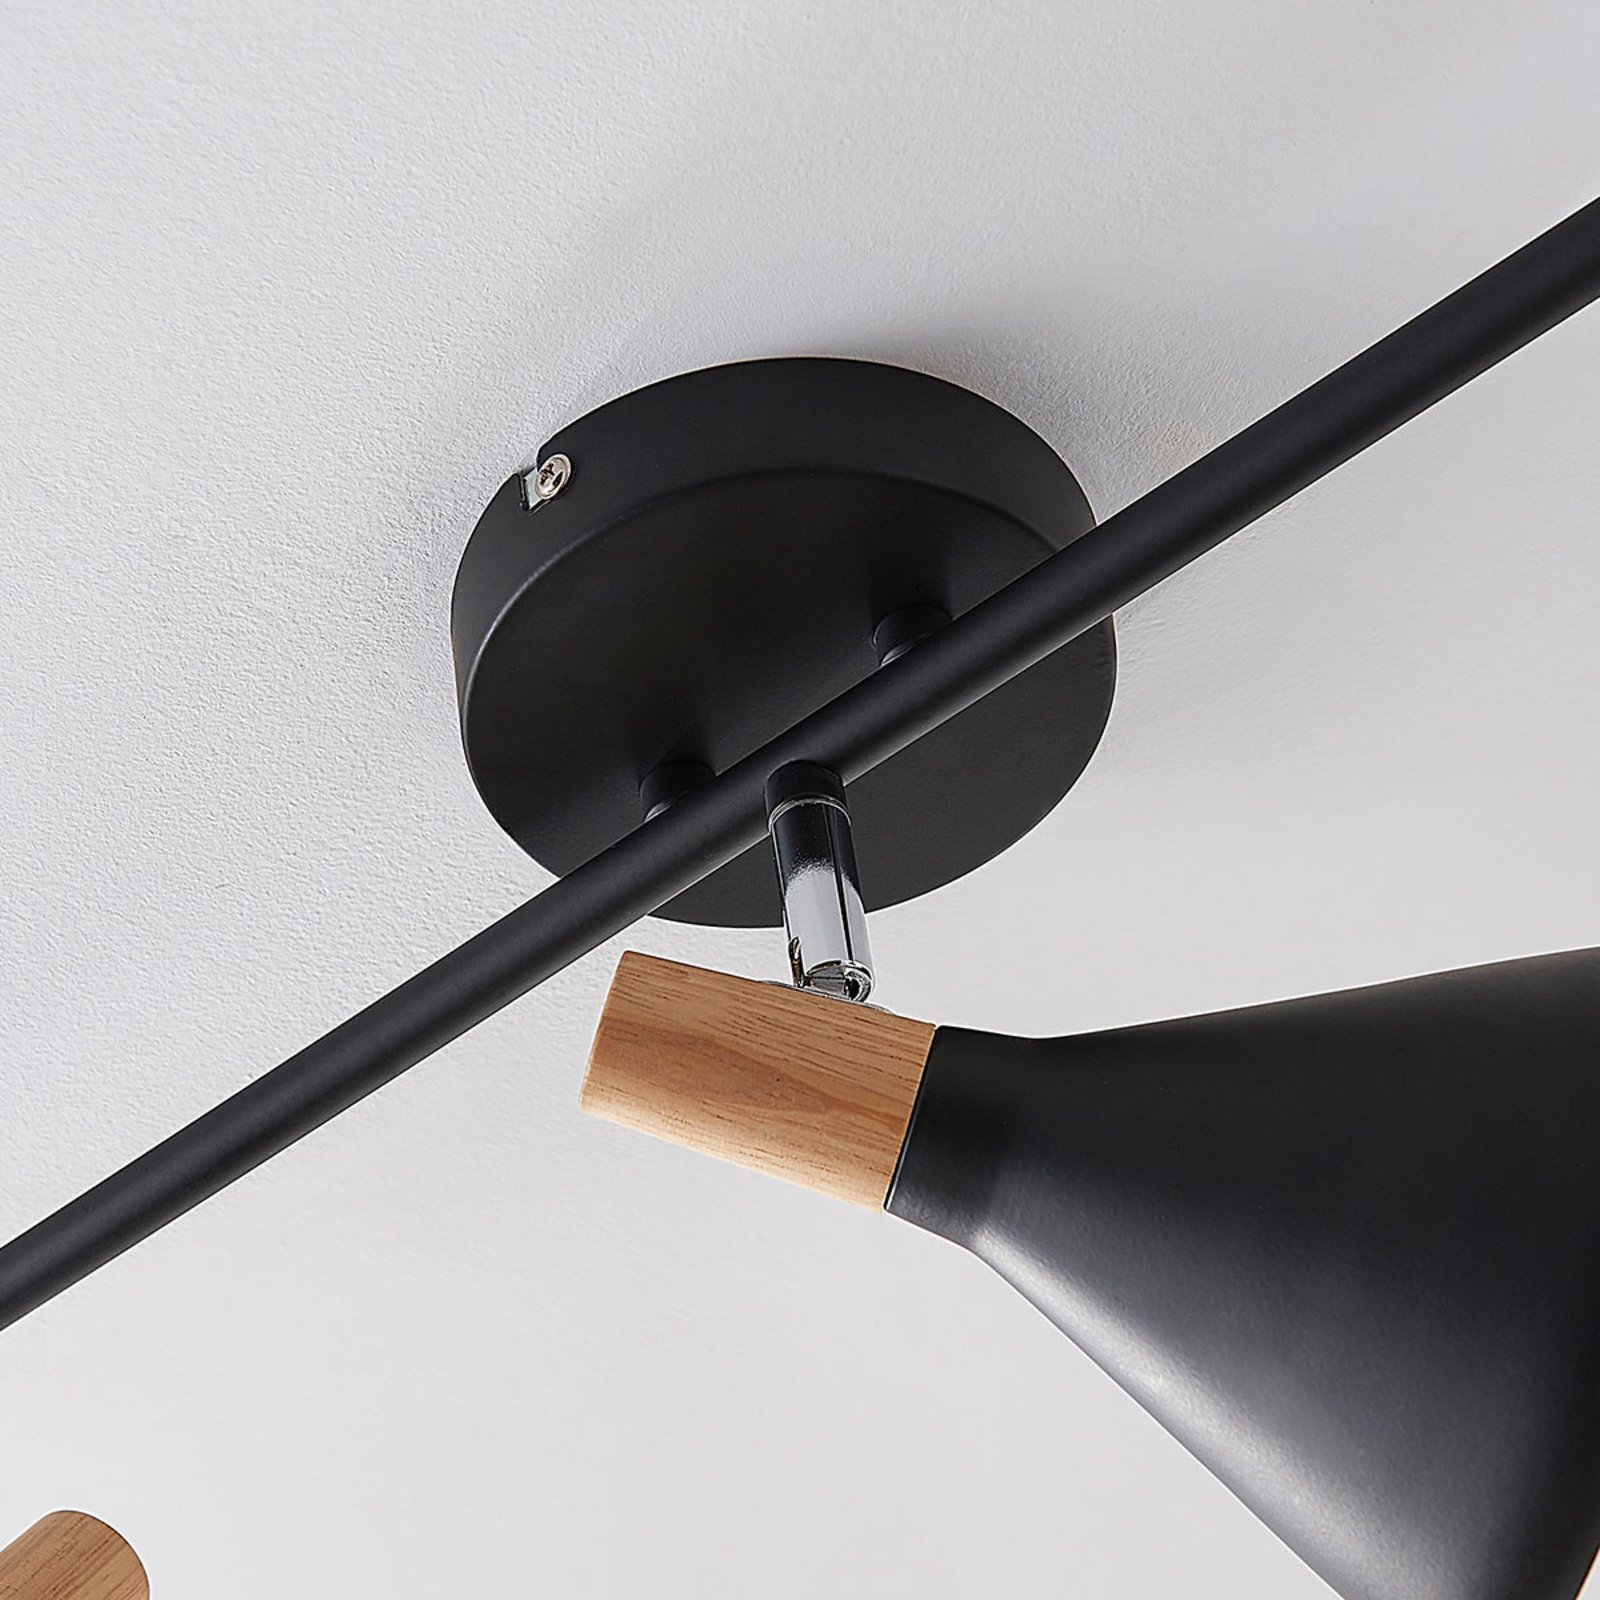 Arina ceiling light in black, 3-bulb long